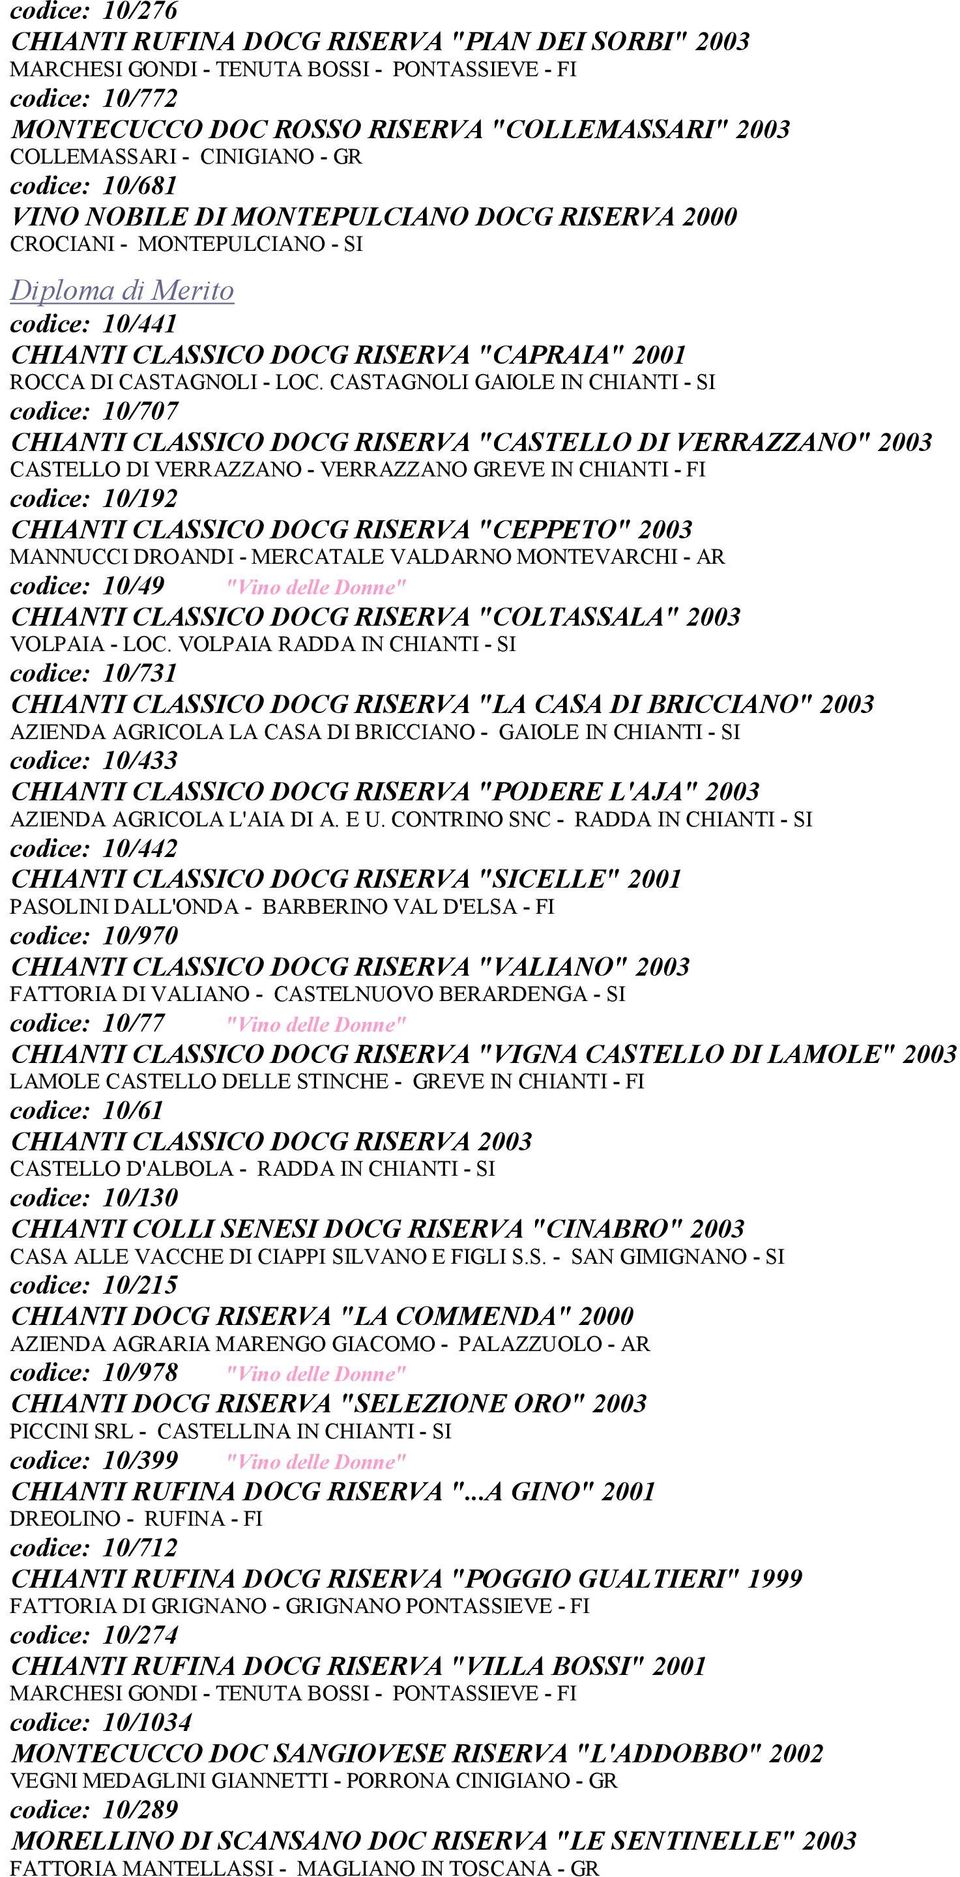 CASTAGNOLI GAIOLE IN CHIANTI - SI codice: 10/707 CHIANTI CLASSICO DOCG RISERVA "CASTELLO DI VERRAZZANO" 2003 CASTELLO DI VERRAZZANO - VERRAZZANO GREVE IN CHIANTI - FI codice: 10/192 CHIANTI CLASSICO